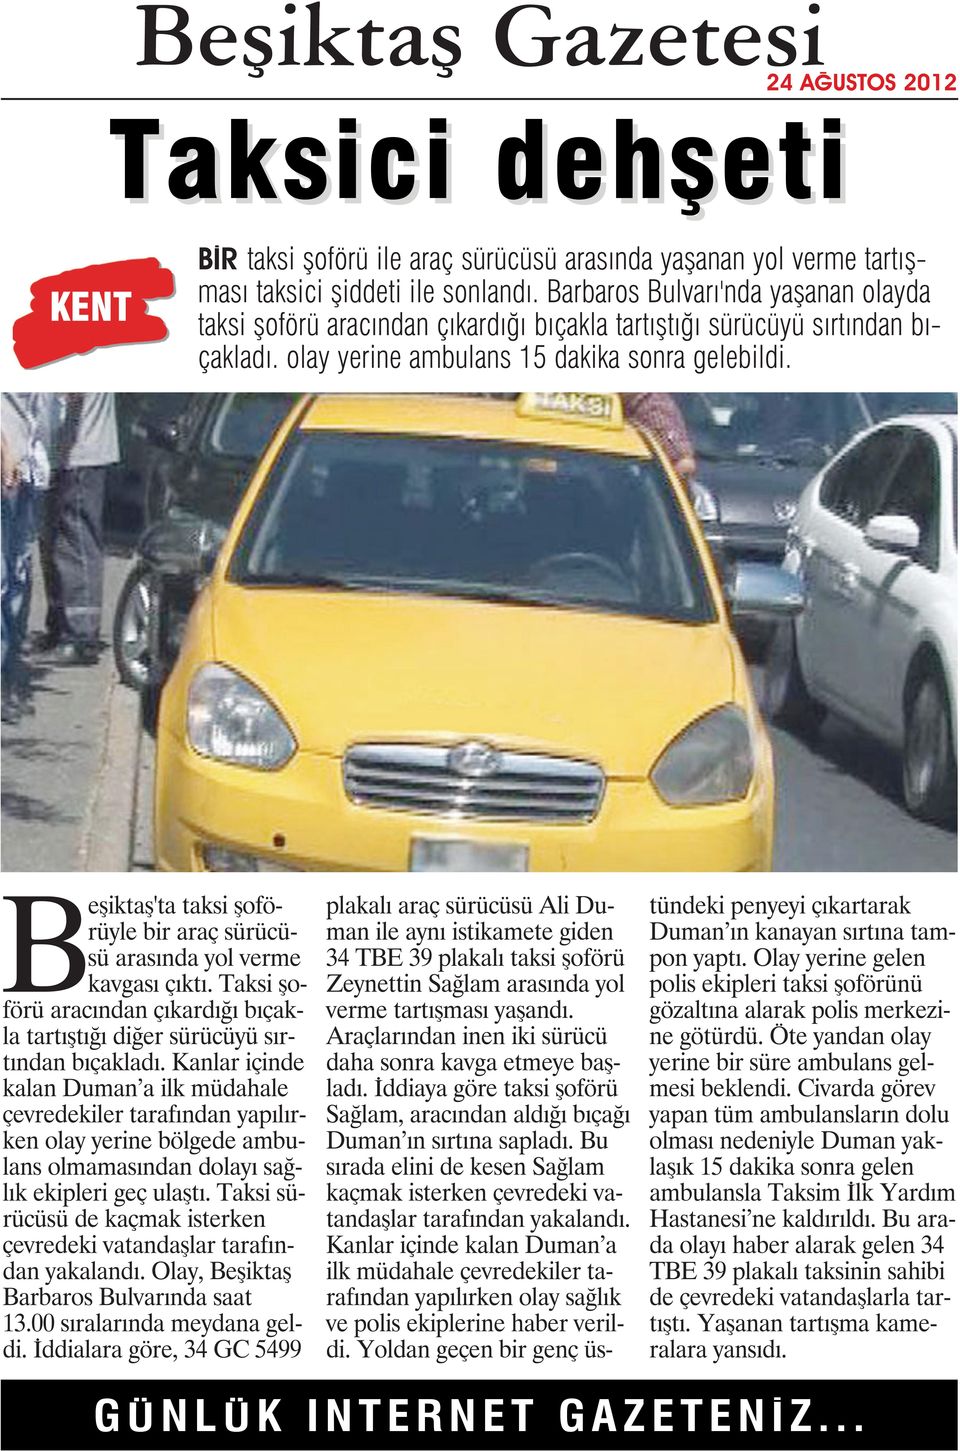 Beşiktaş'ta taksi şoförüyle bir araç sürücüsü arasında yol verme kavgası çıktı. Taksi şoförü aracından çıkardığı bıçakla tartıştığı diğer sürücüyü sırtından bıçakladı.